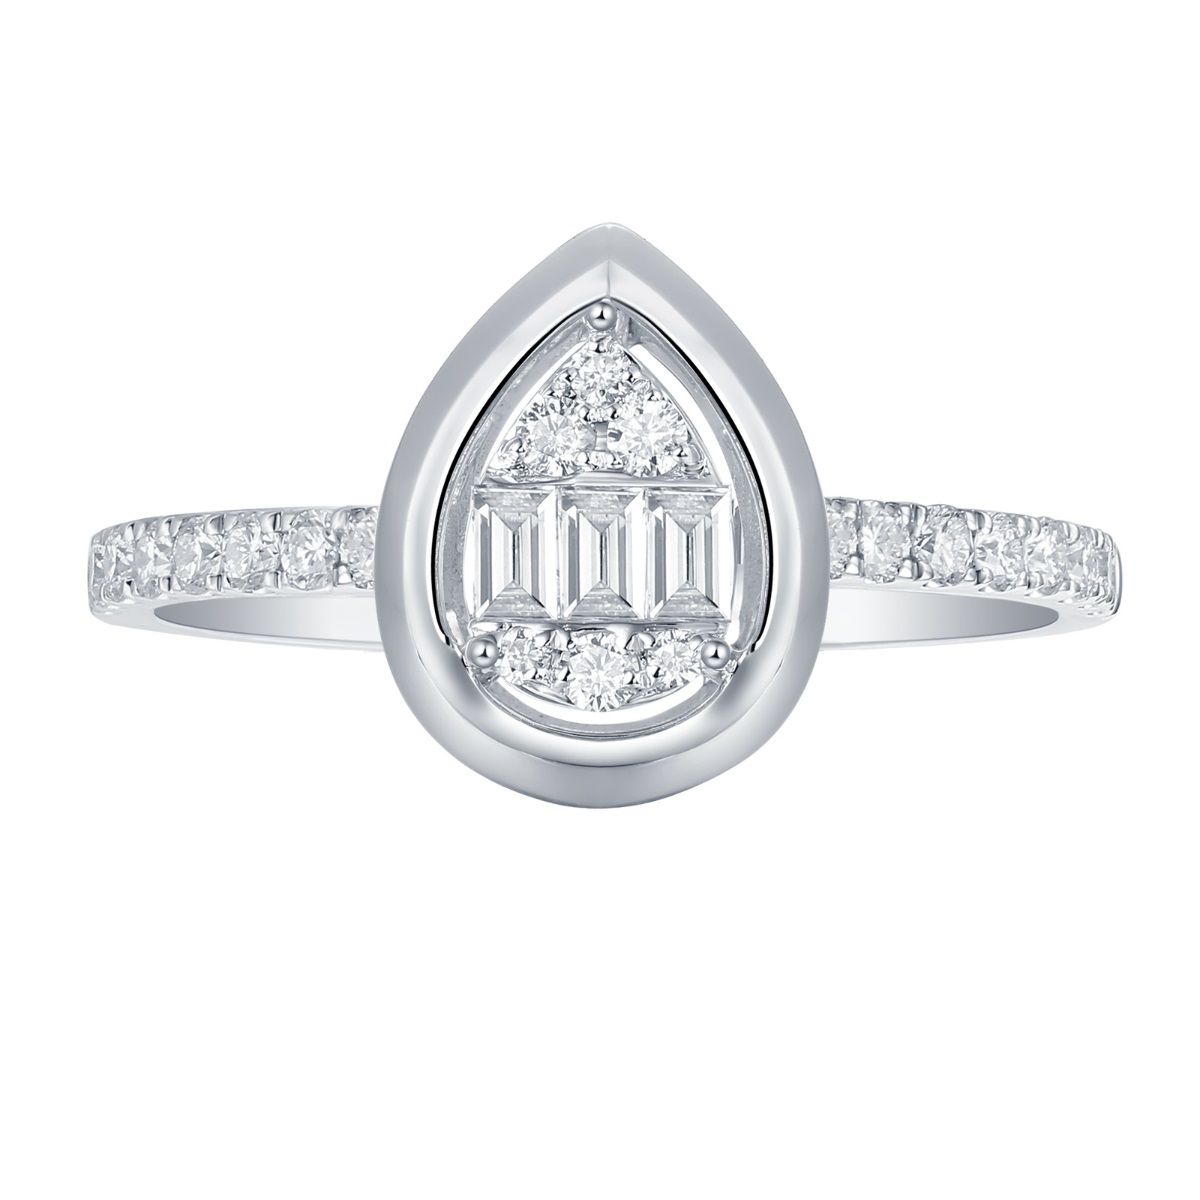 R36581WHT – 18K White Gold  Diamond Ring, 0.47 TCW